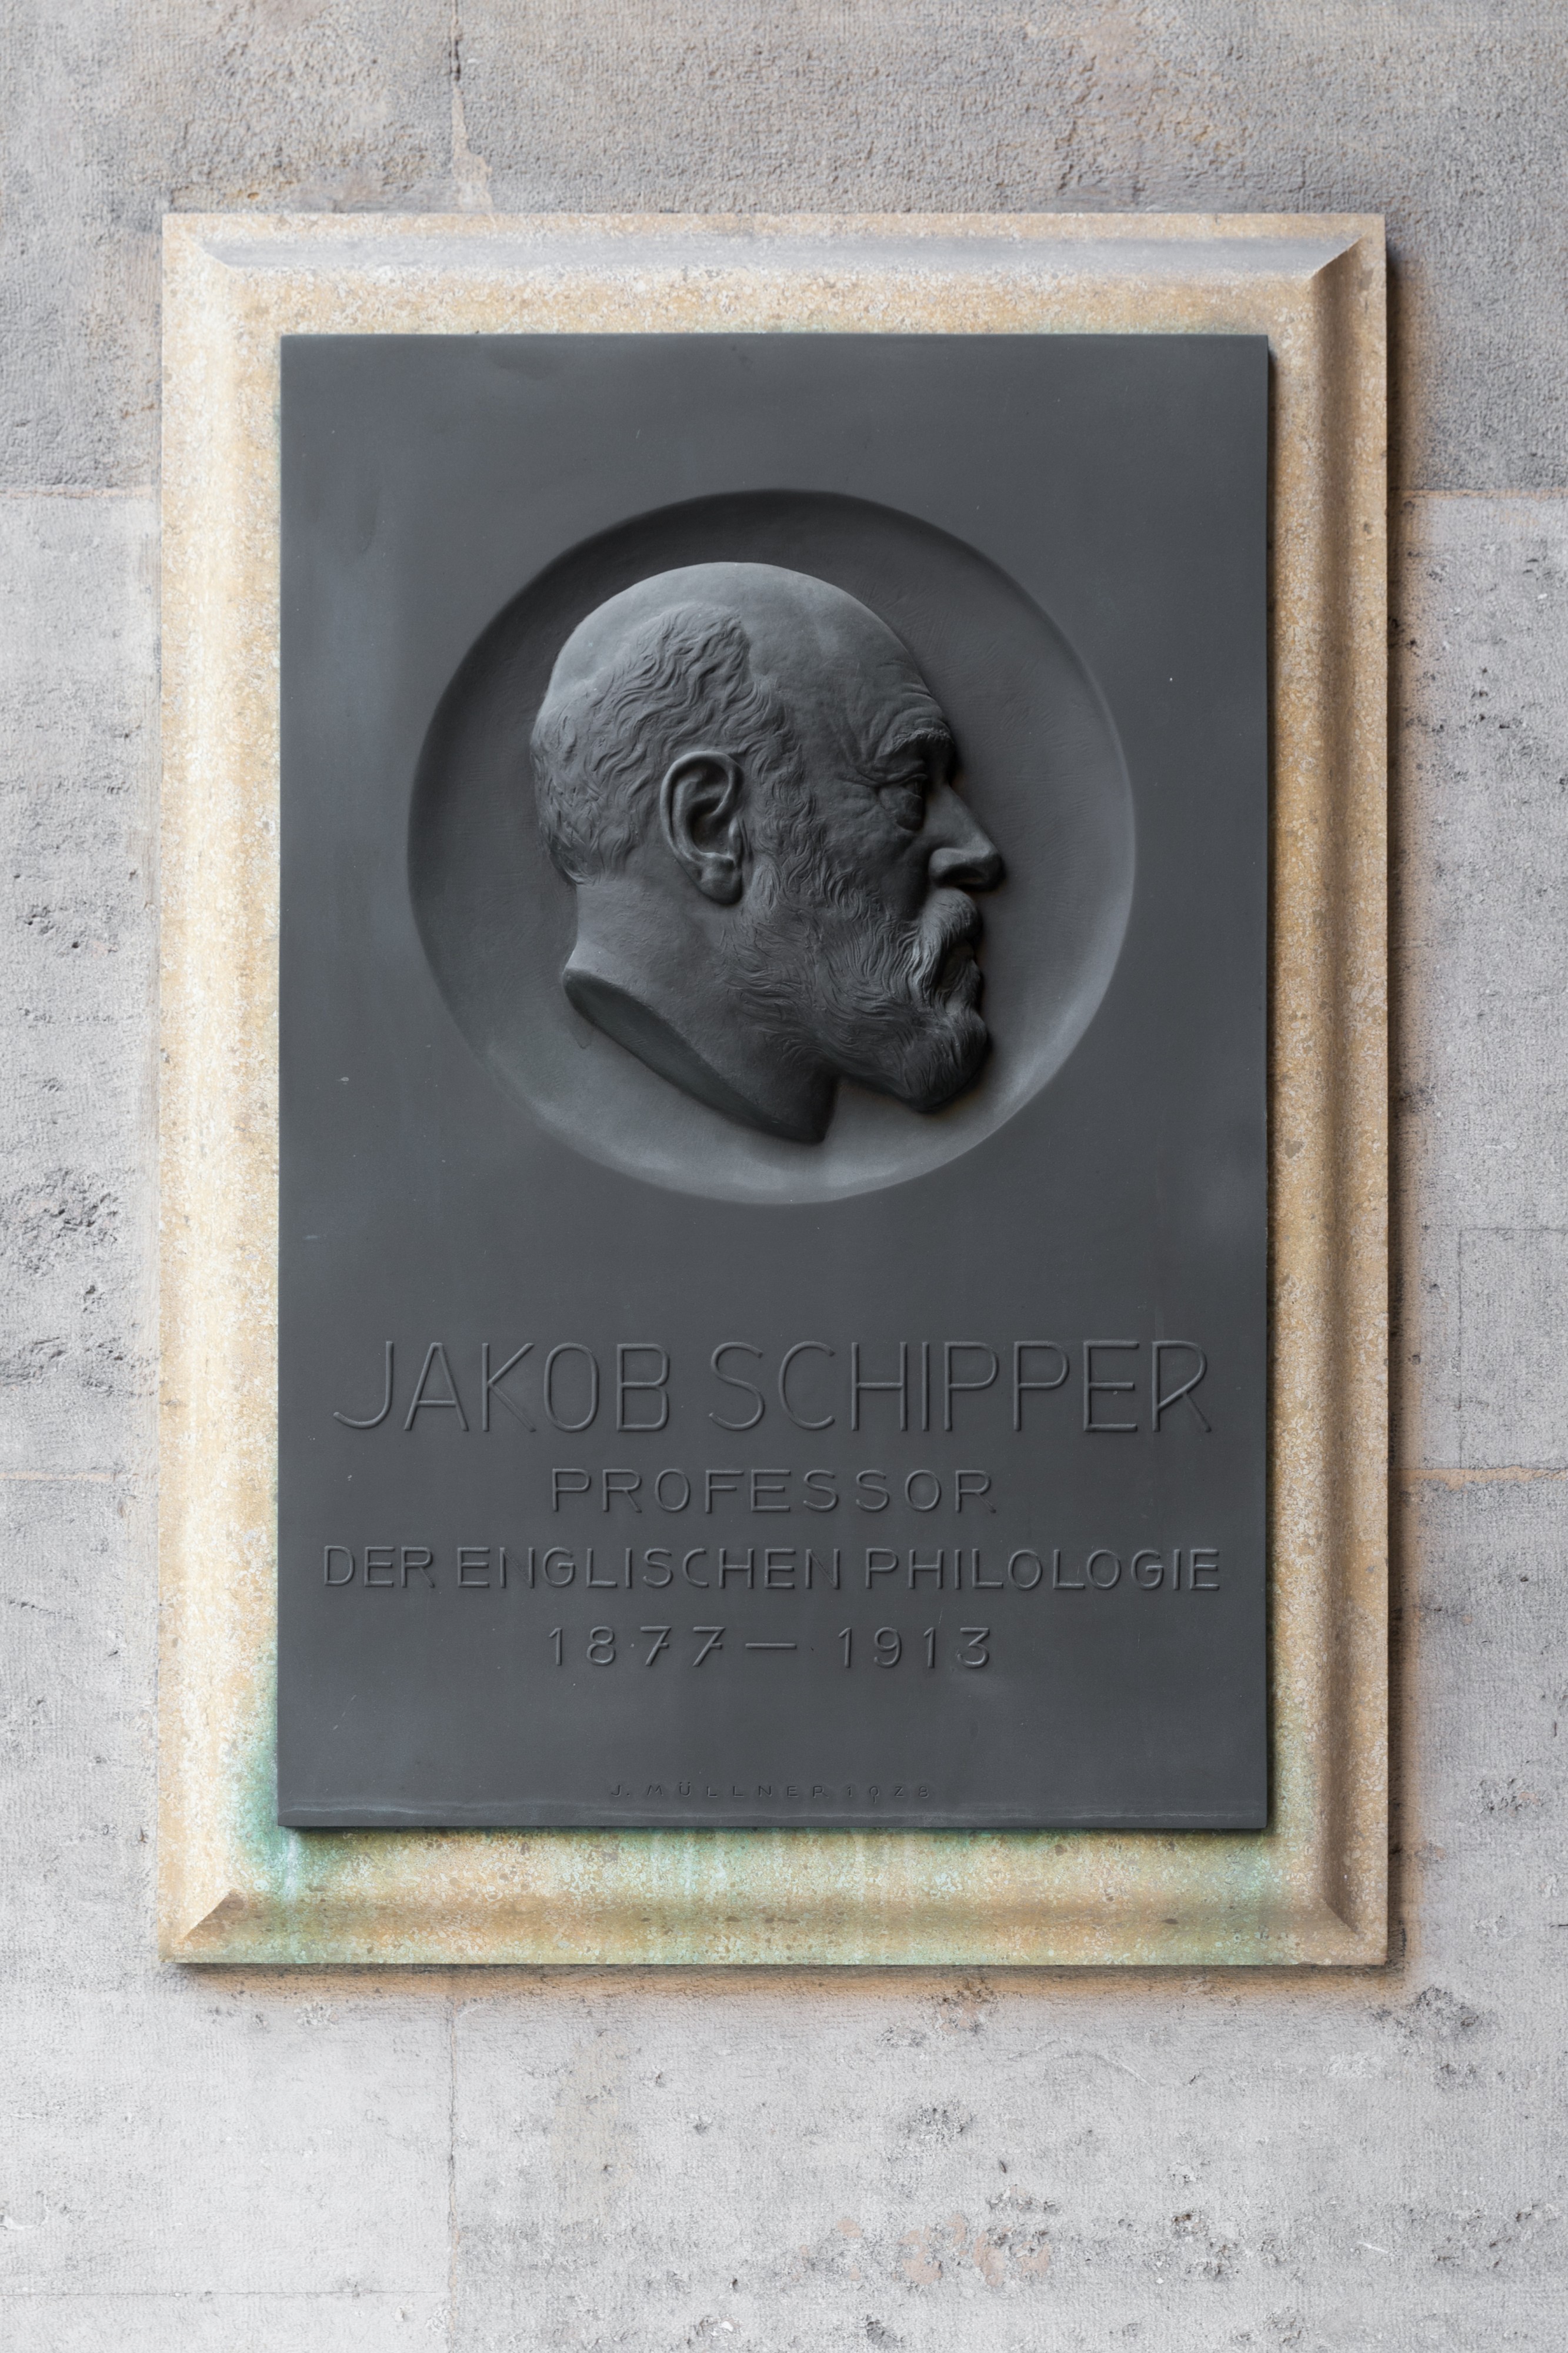 Jakob Schipper (1842-1915), Nr. 100 basrelief (bronze) in the Arkadenhof of the University of Vienna-2520